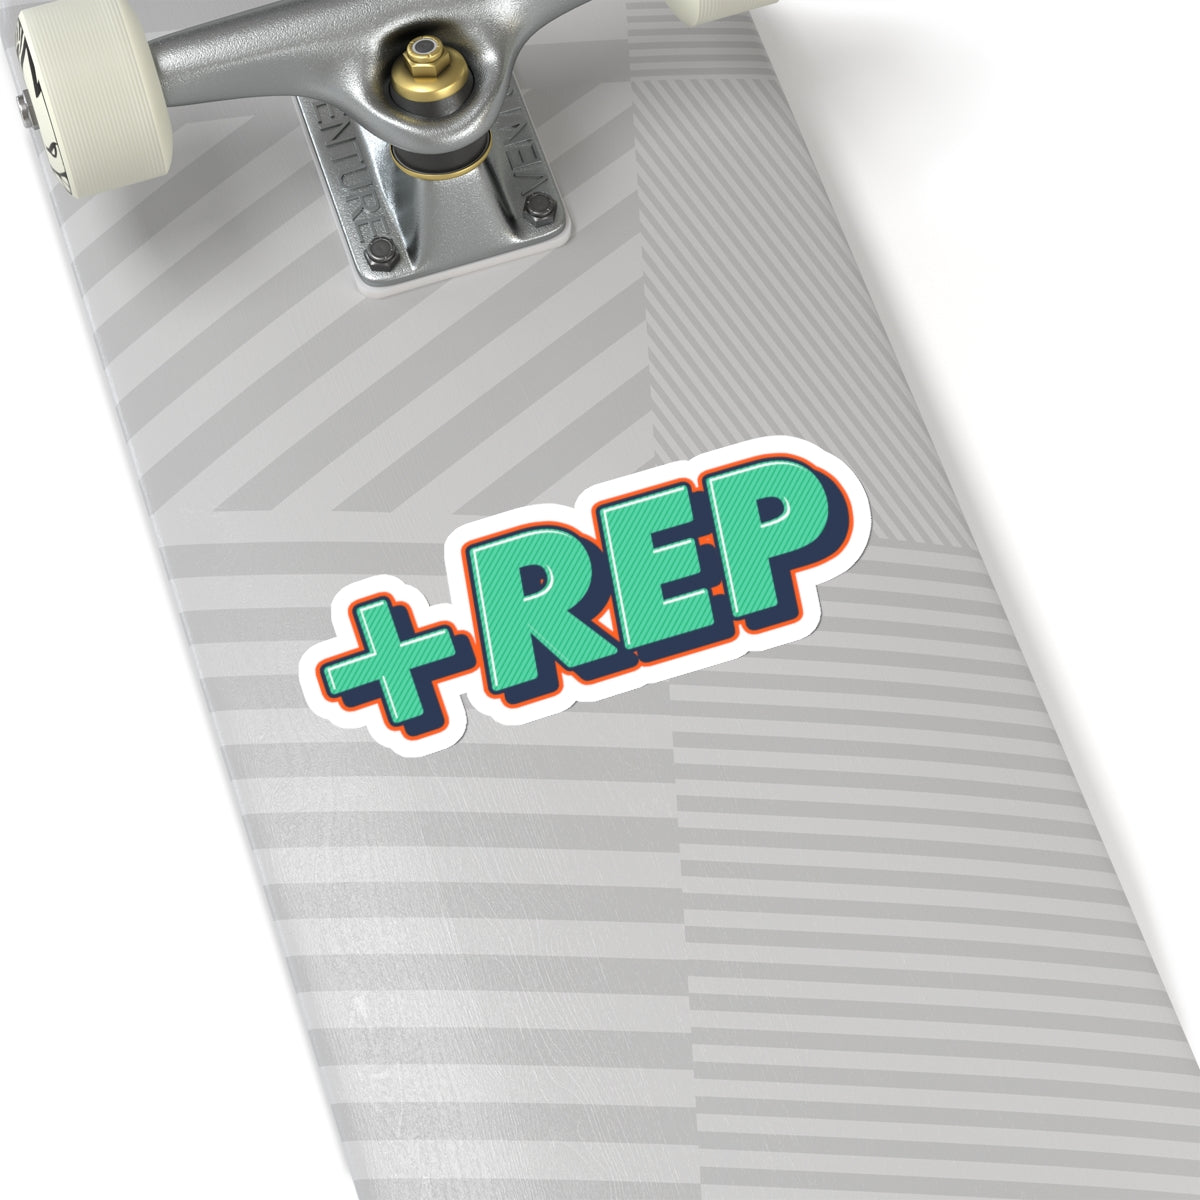 The +Rep Sticker